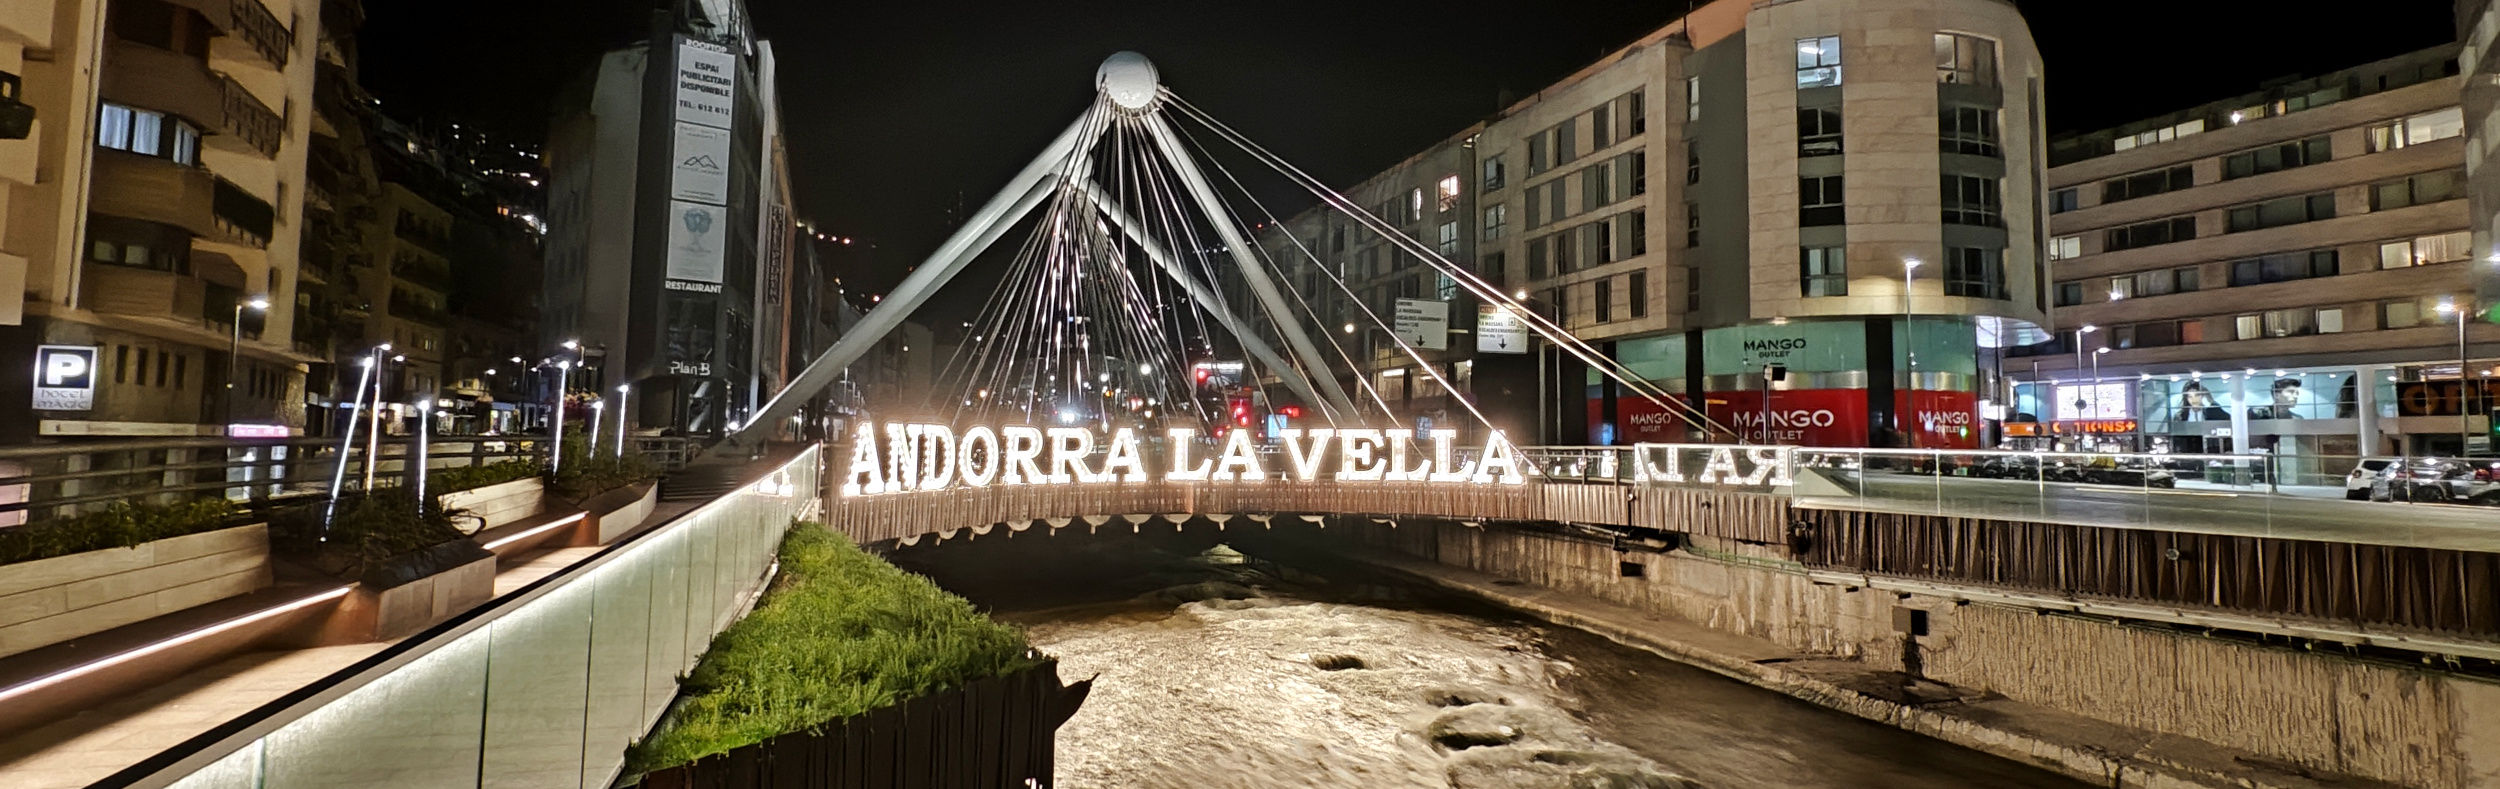 ANDORRA LA VELLA - Hotels in Andorra